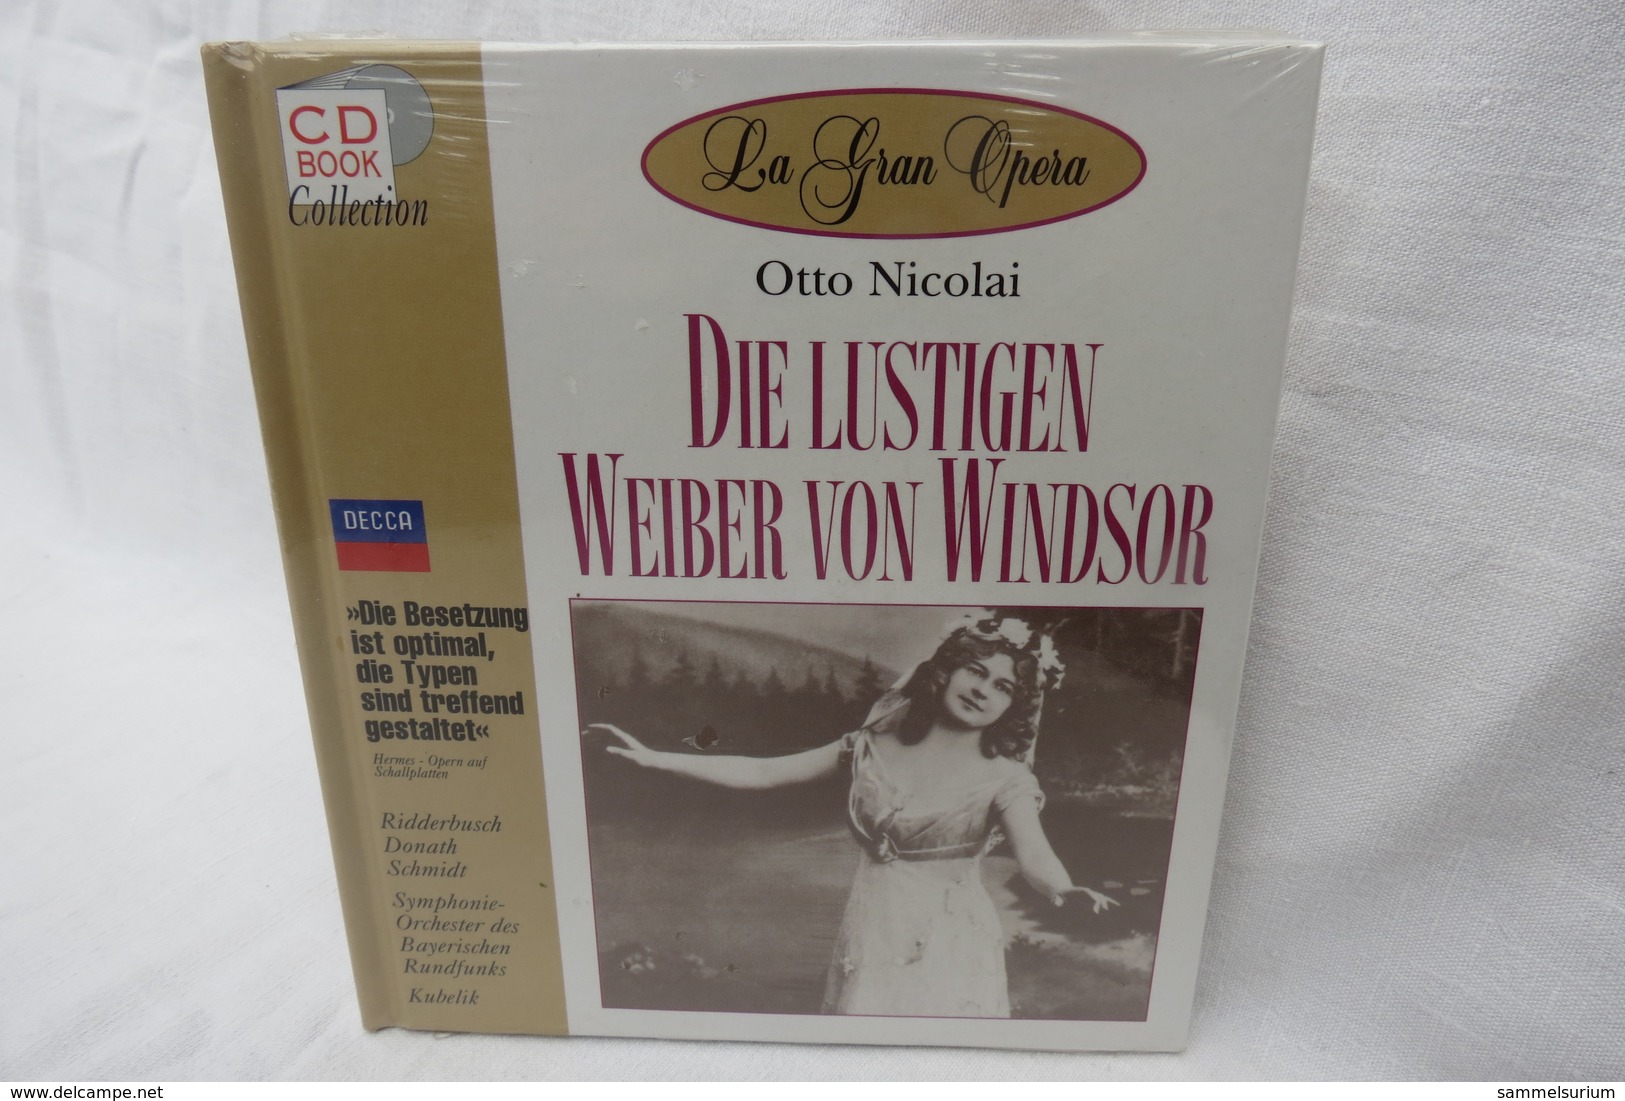 CD "Die Lustigen Weiber V.Windsor/Otto Nicolai" Mit Buch Aus Der CD Book Collection (ungeöffnet, Original Eingeschweißt) - Oper & Operette